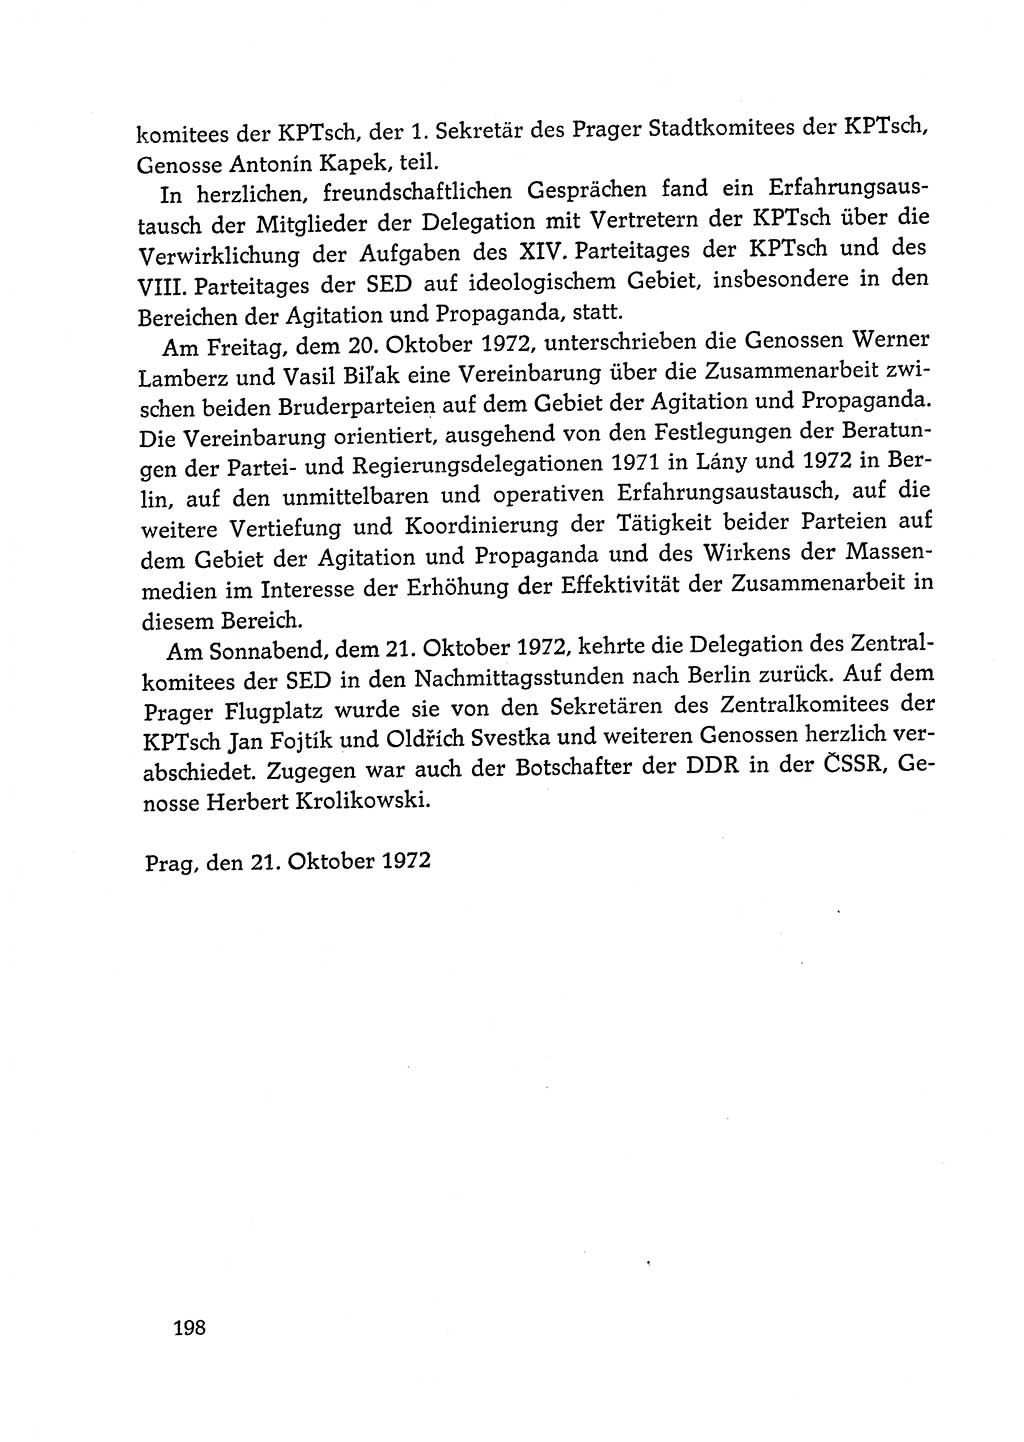 Dokumente der Sozialistischen Einheitspartei Deutschlands (SED) [Deutsche Demokratische Republik (DDR)] 1972-1973, Seite 198 (Dok. SED DDR 1972-1973, S. 198)